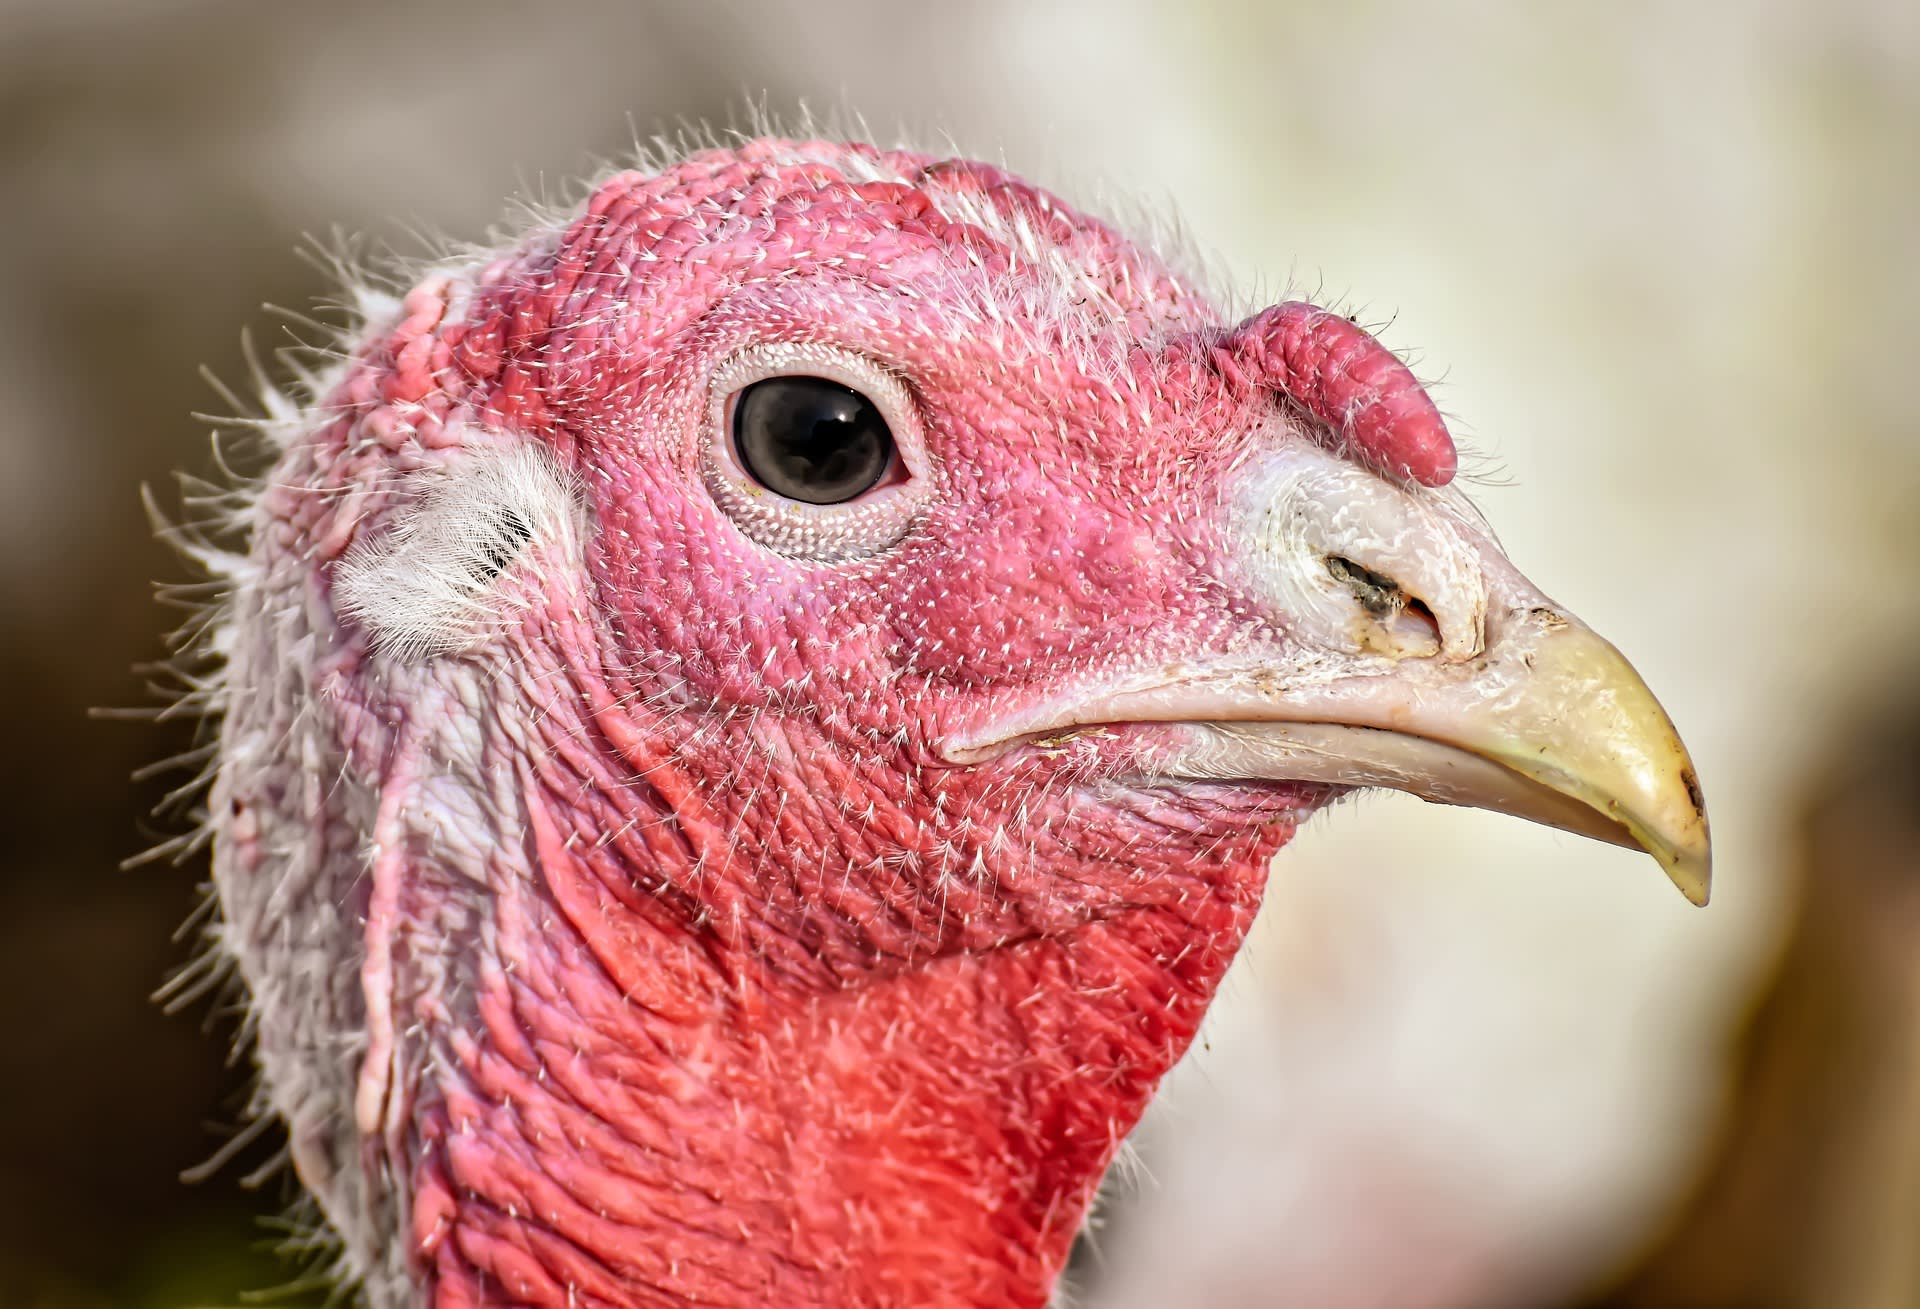 Velkou část obětí boje proti ptačí chřipka představují krůty. Credit: Pixabay